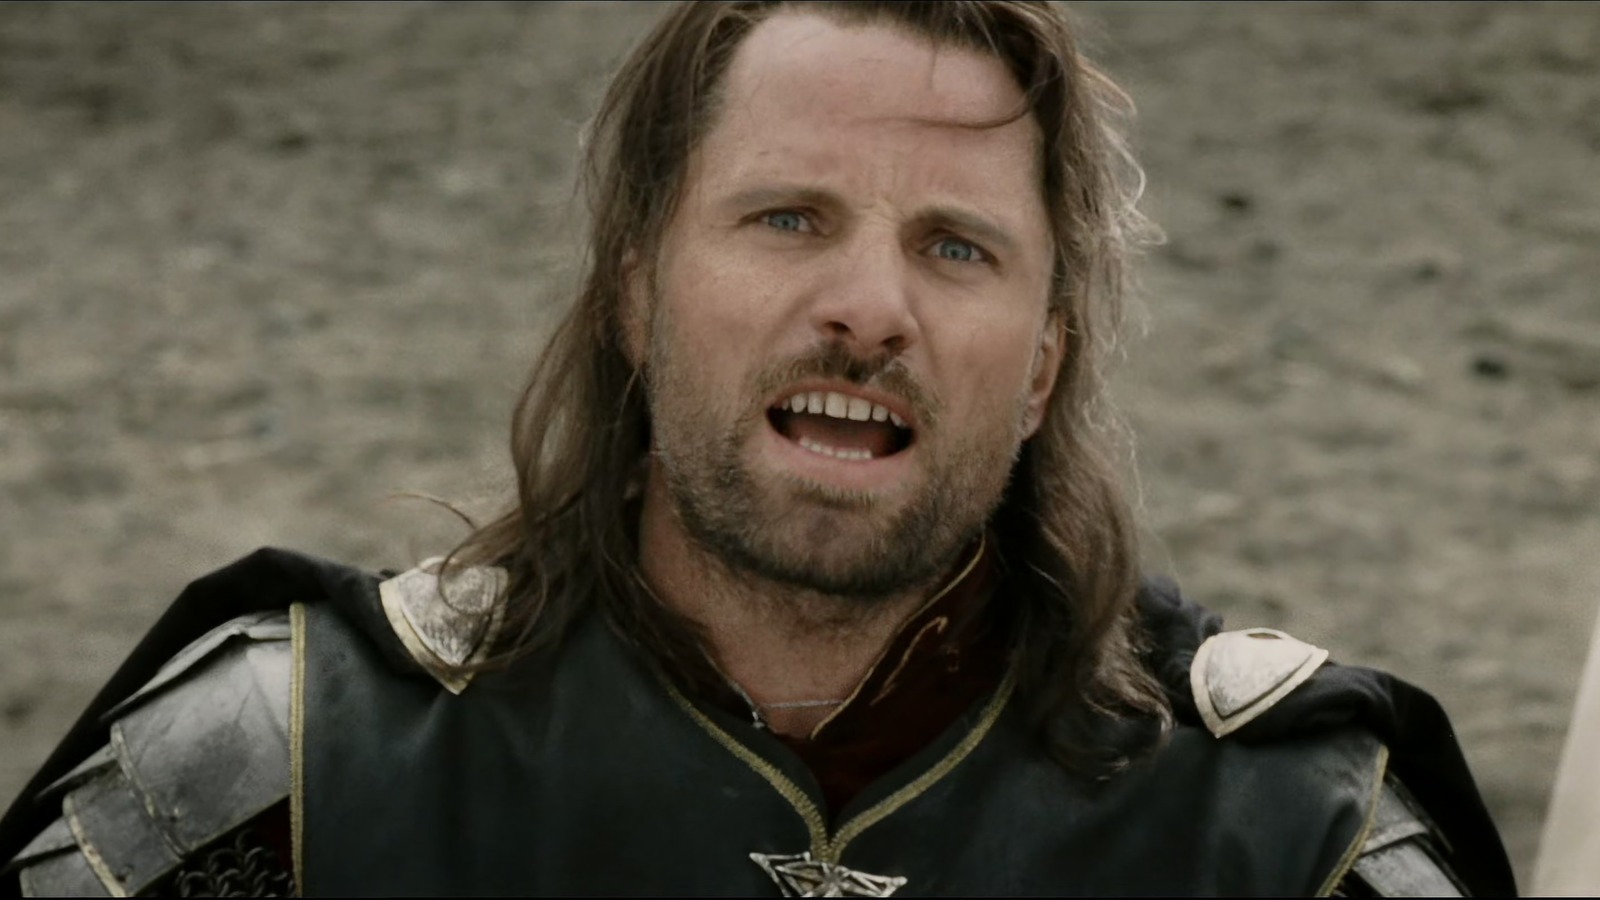 Viggo Mortensen in The Fellowship of the Ring